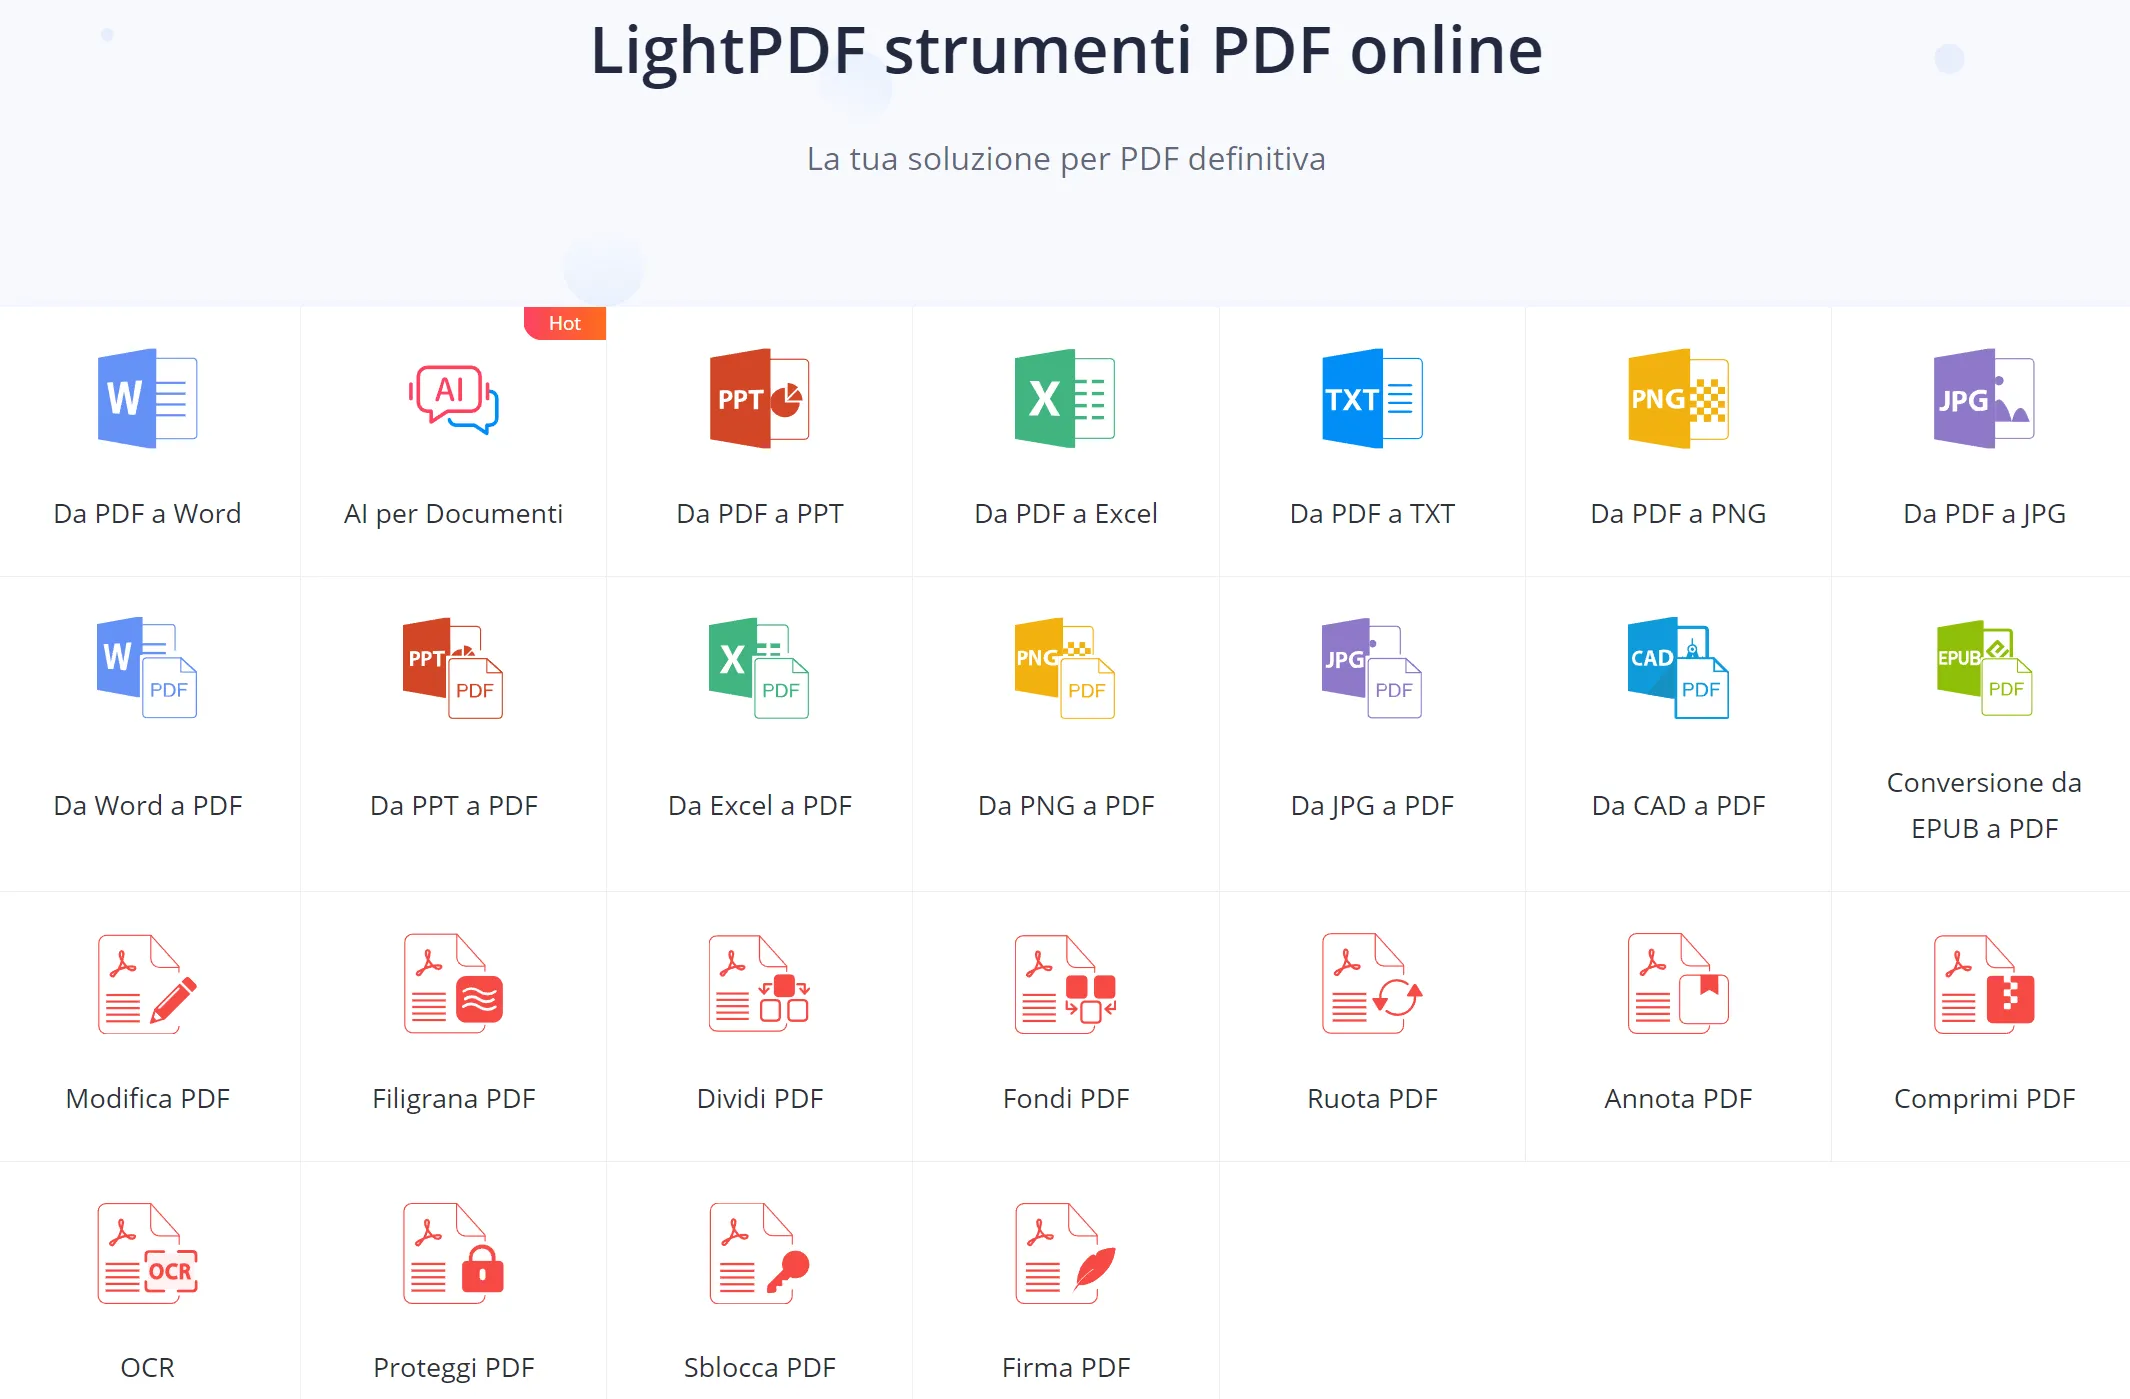 LightPDF strumenti PDF online